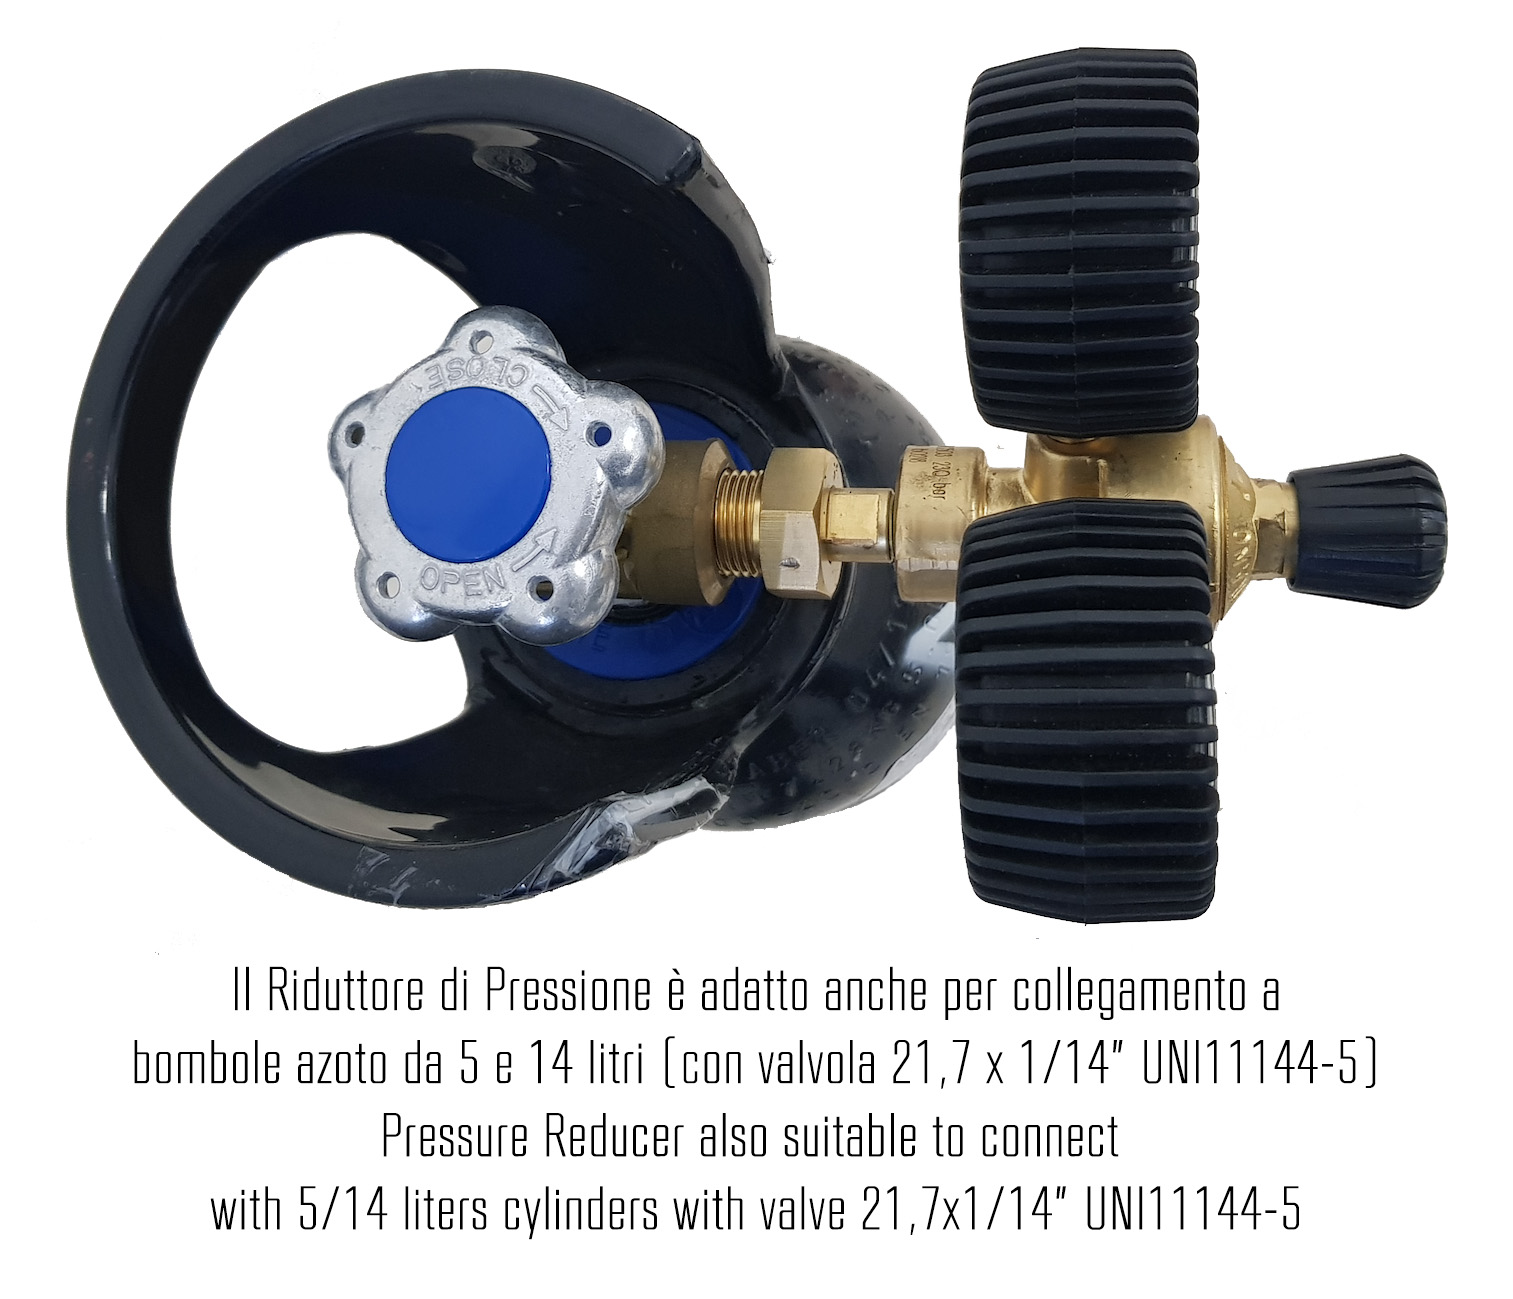 K-Leak Tester N2H2 - Kit cercafughe azoto/idrogeno per  impianti Refrigerazione & A/C (adatto anche per collegamento a bombole industriali) - Foto 4